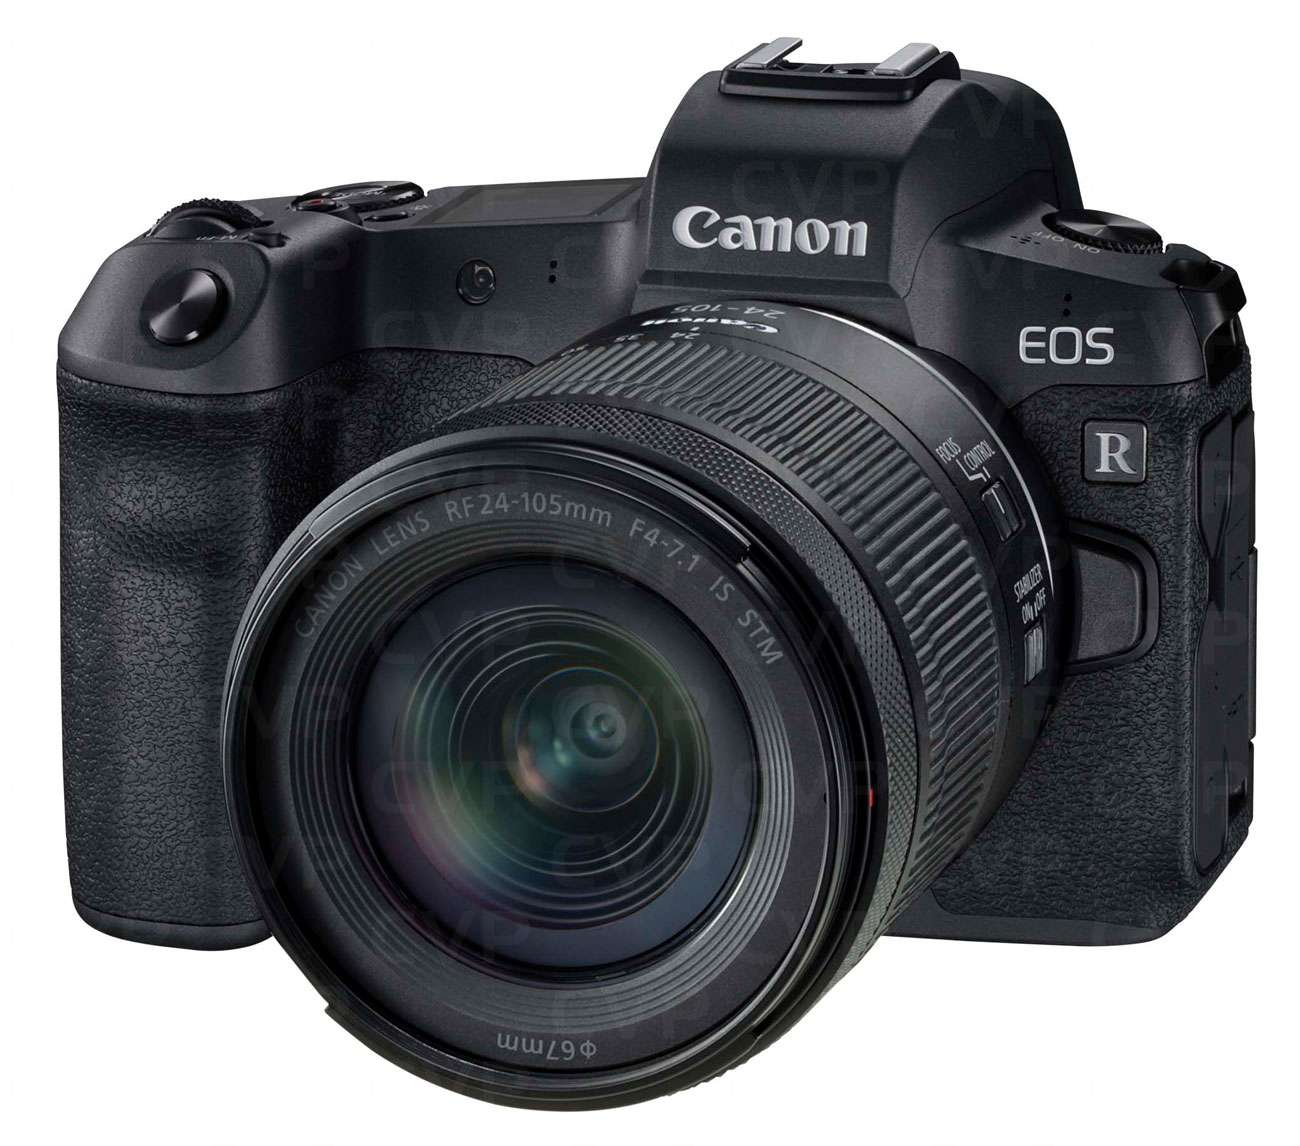 Canon EOS RP Kit RF 24-105mm F4 - 7.1 IS STM (Mới 100%) - Bảo hành chính hãng 02 năm trên toàn quốc